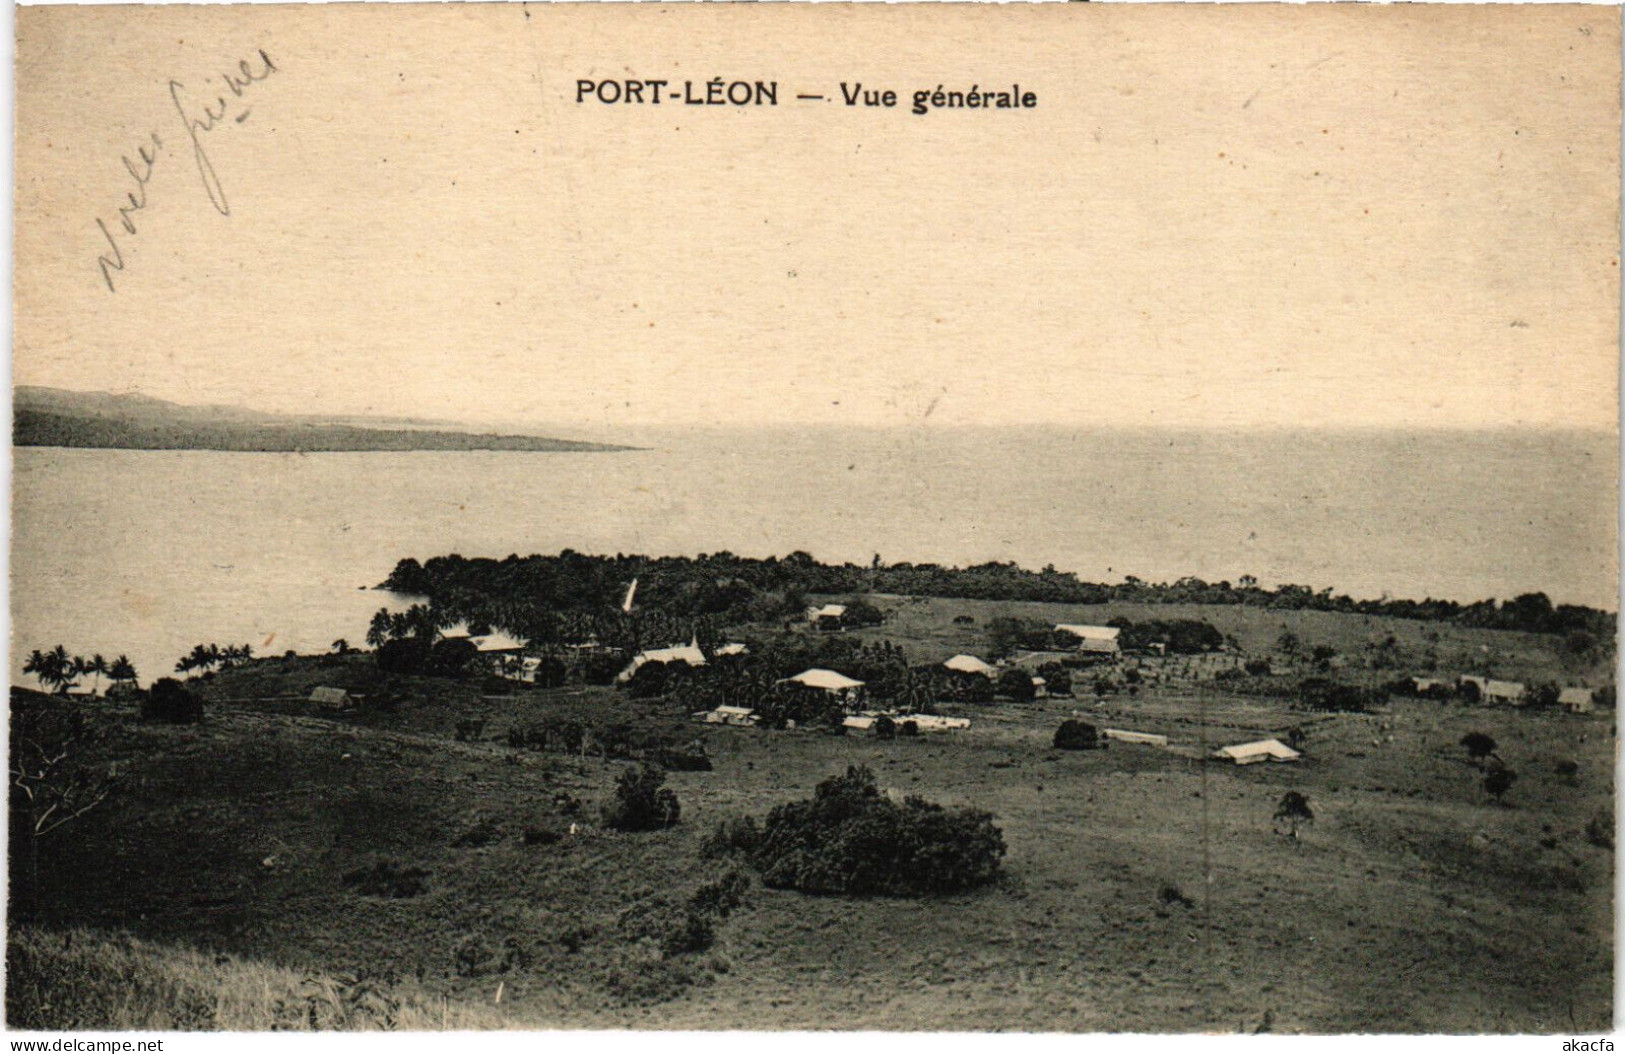 PC NEW GUINEA, PORT LÉON, VUE GENERALE, Vintage Postcard (b53576) - Papouasie-Nouvelle-Guinée